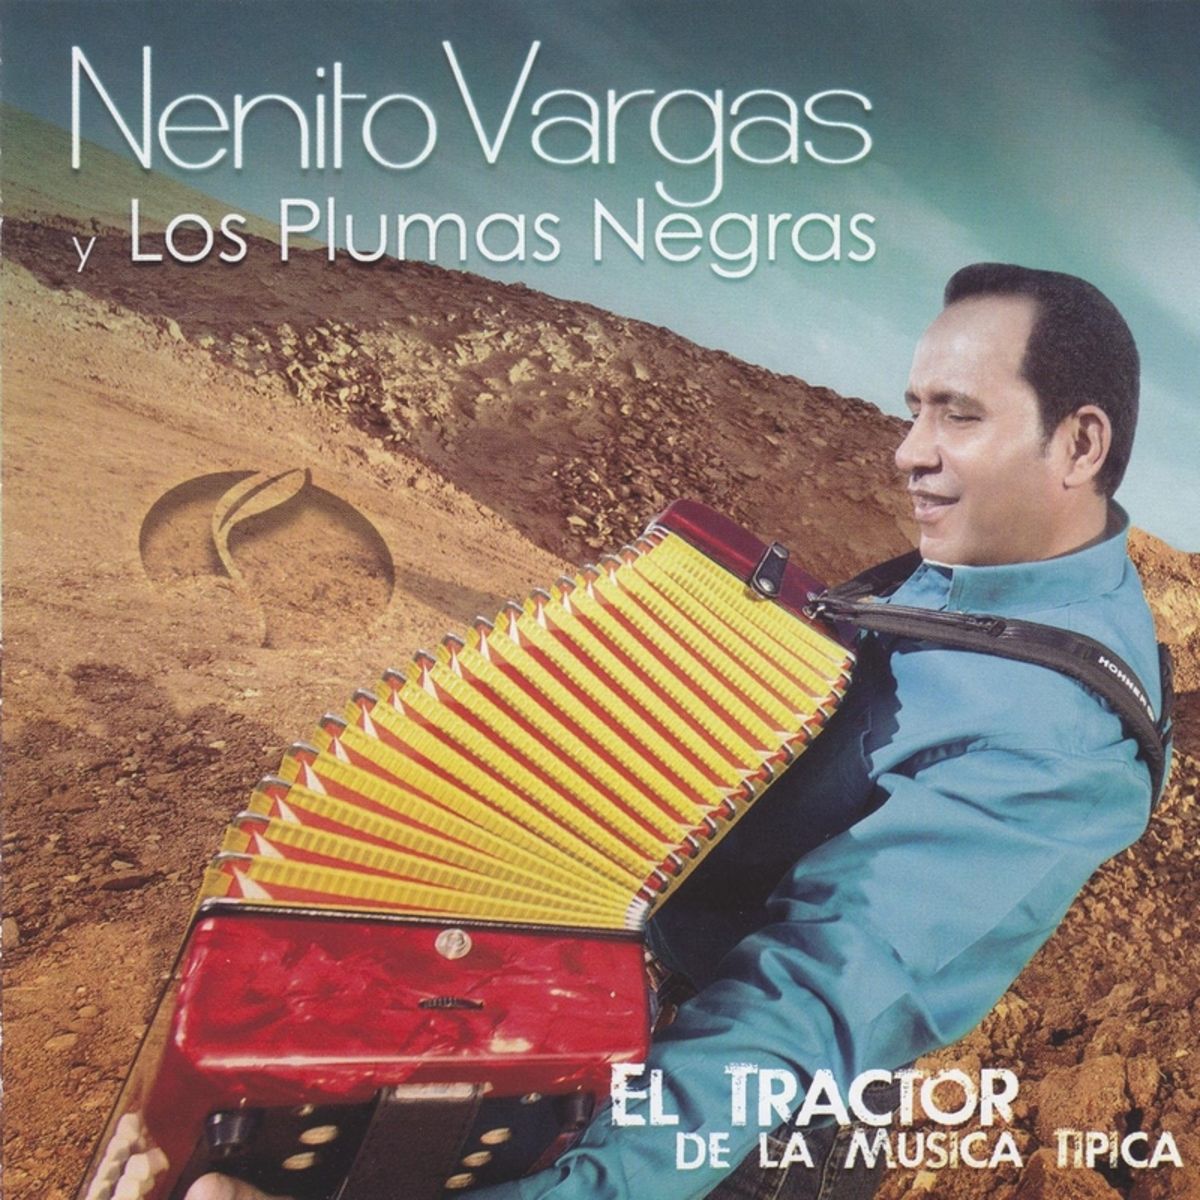 9 - Nenito Vargas y los Plumas Negras - Los Colores del Amor.mp3